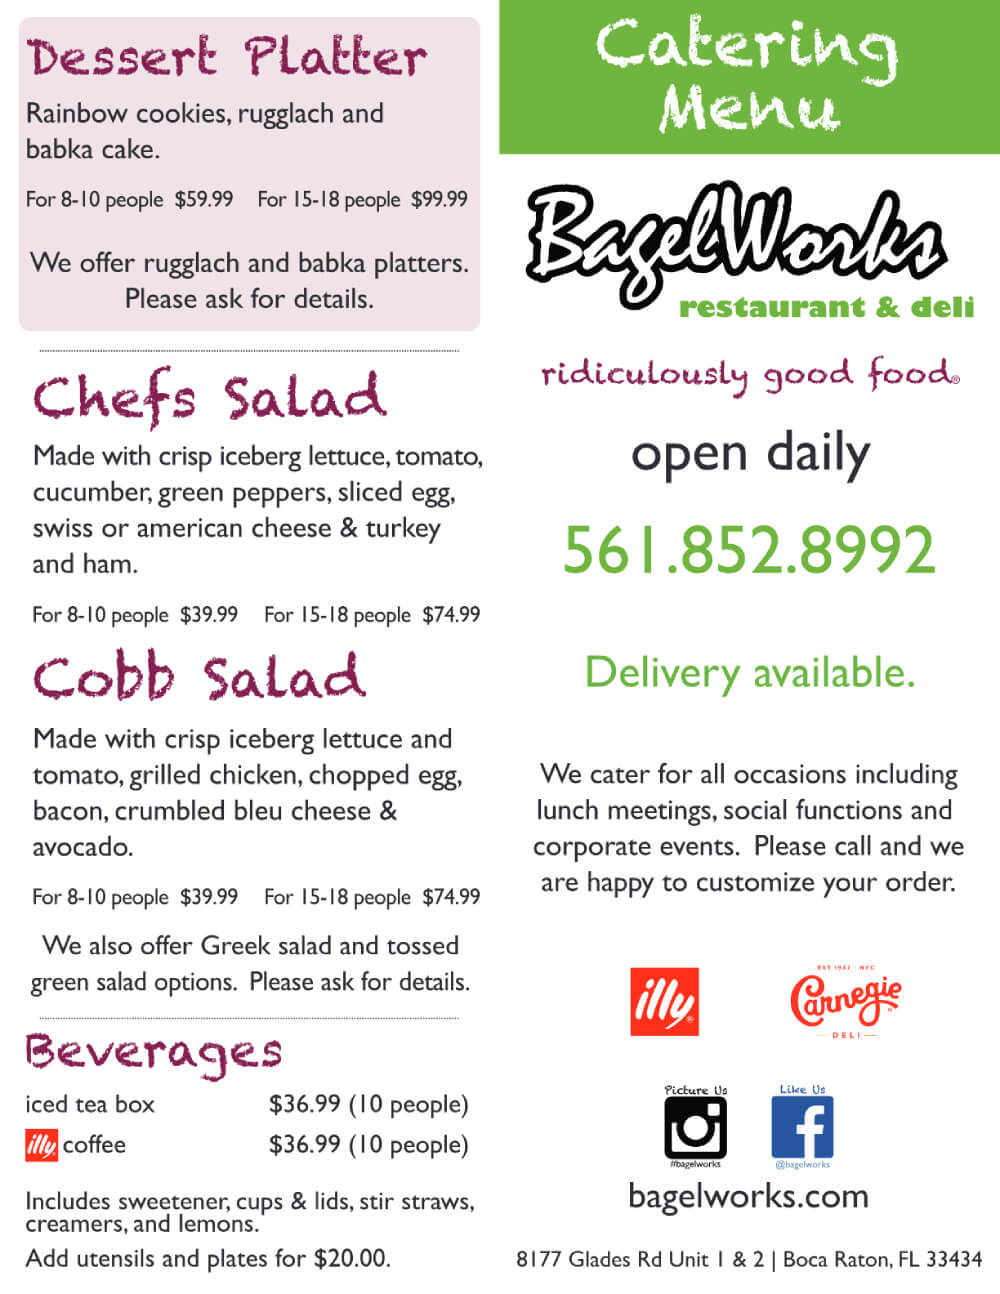 bagelworks catering menu